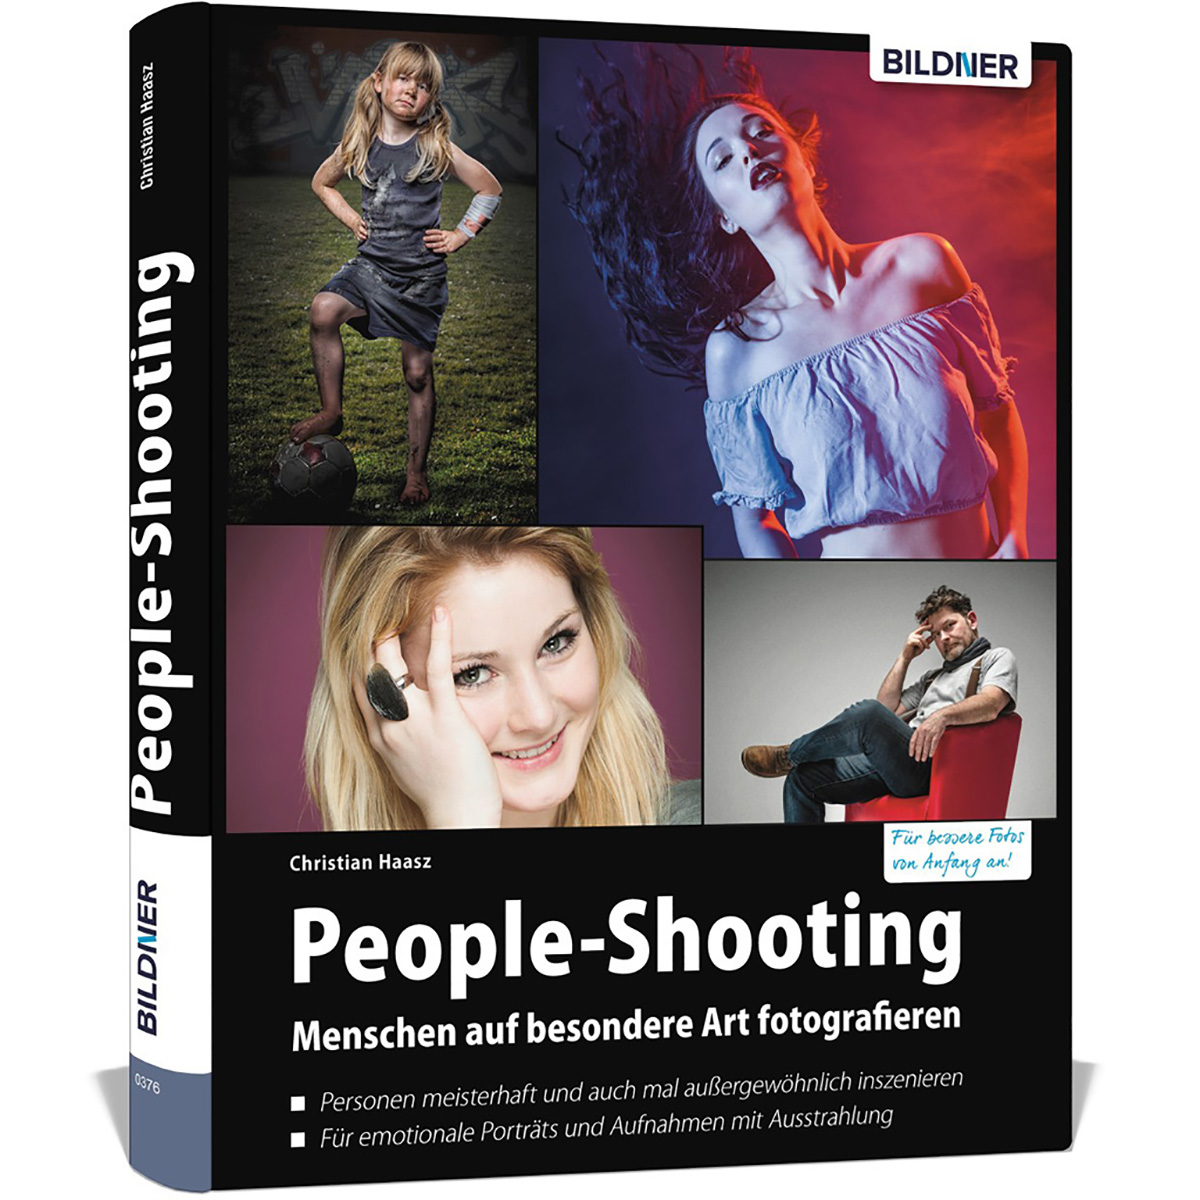 besondere - People-Shooting Art auf fotografieren Menschen